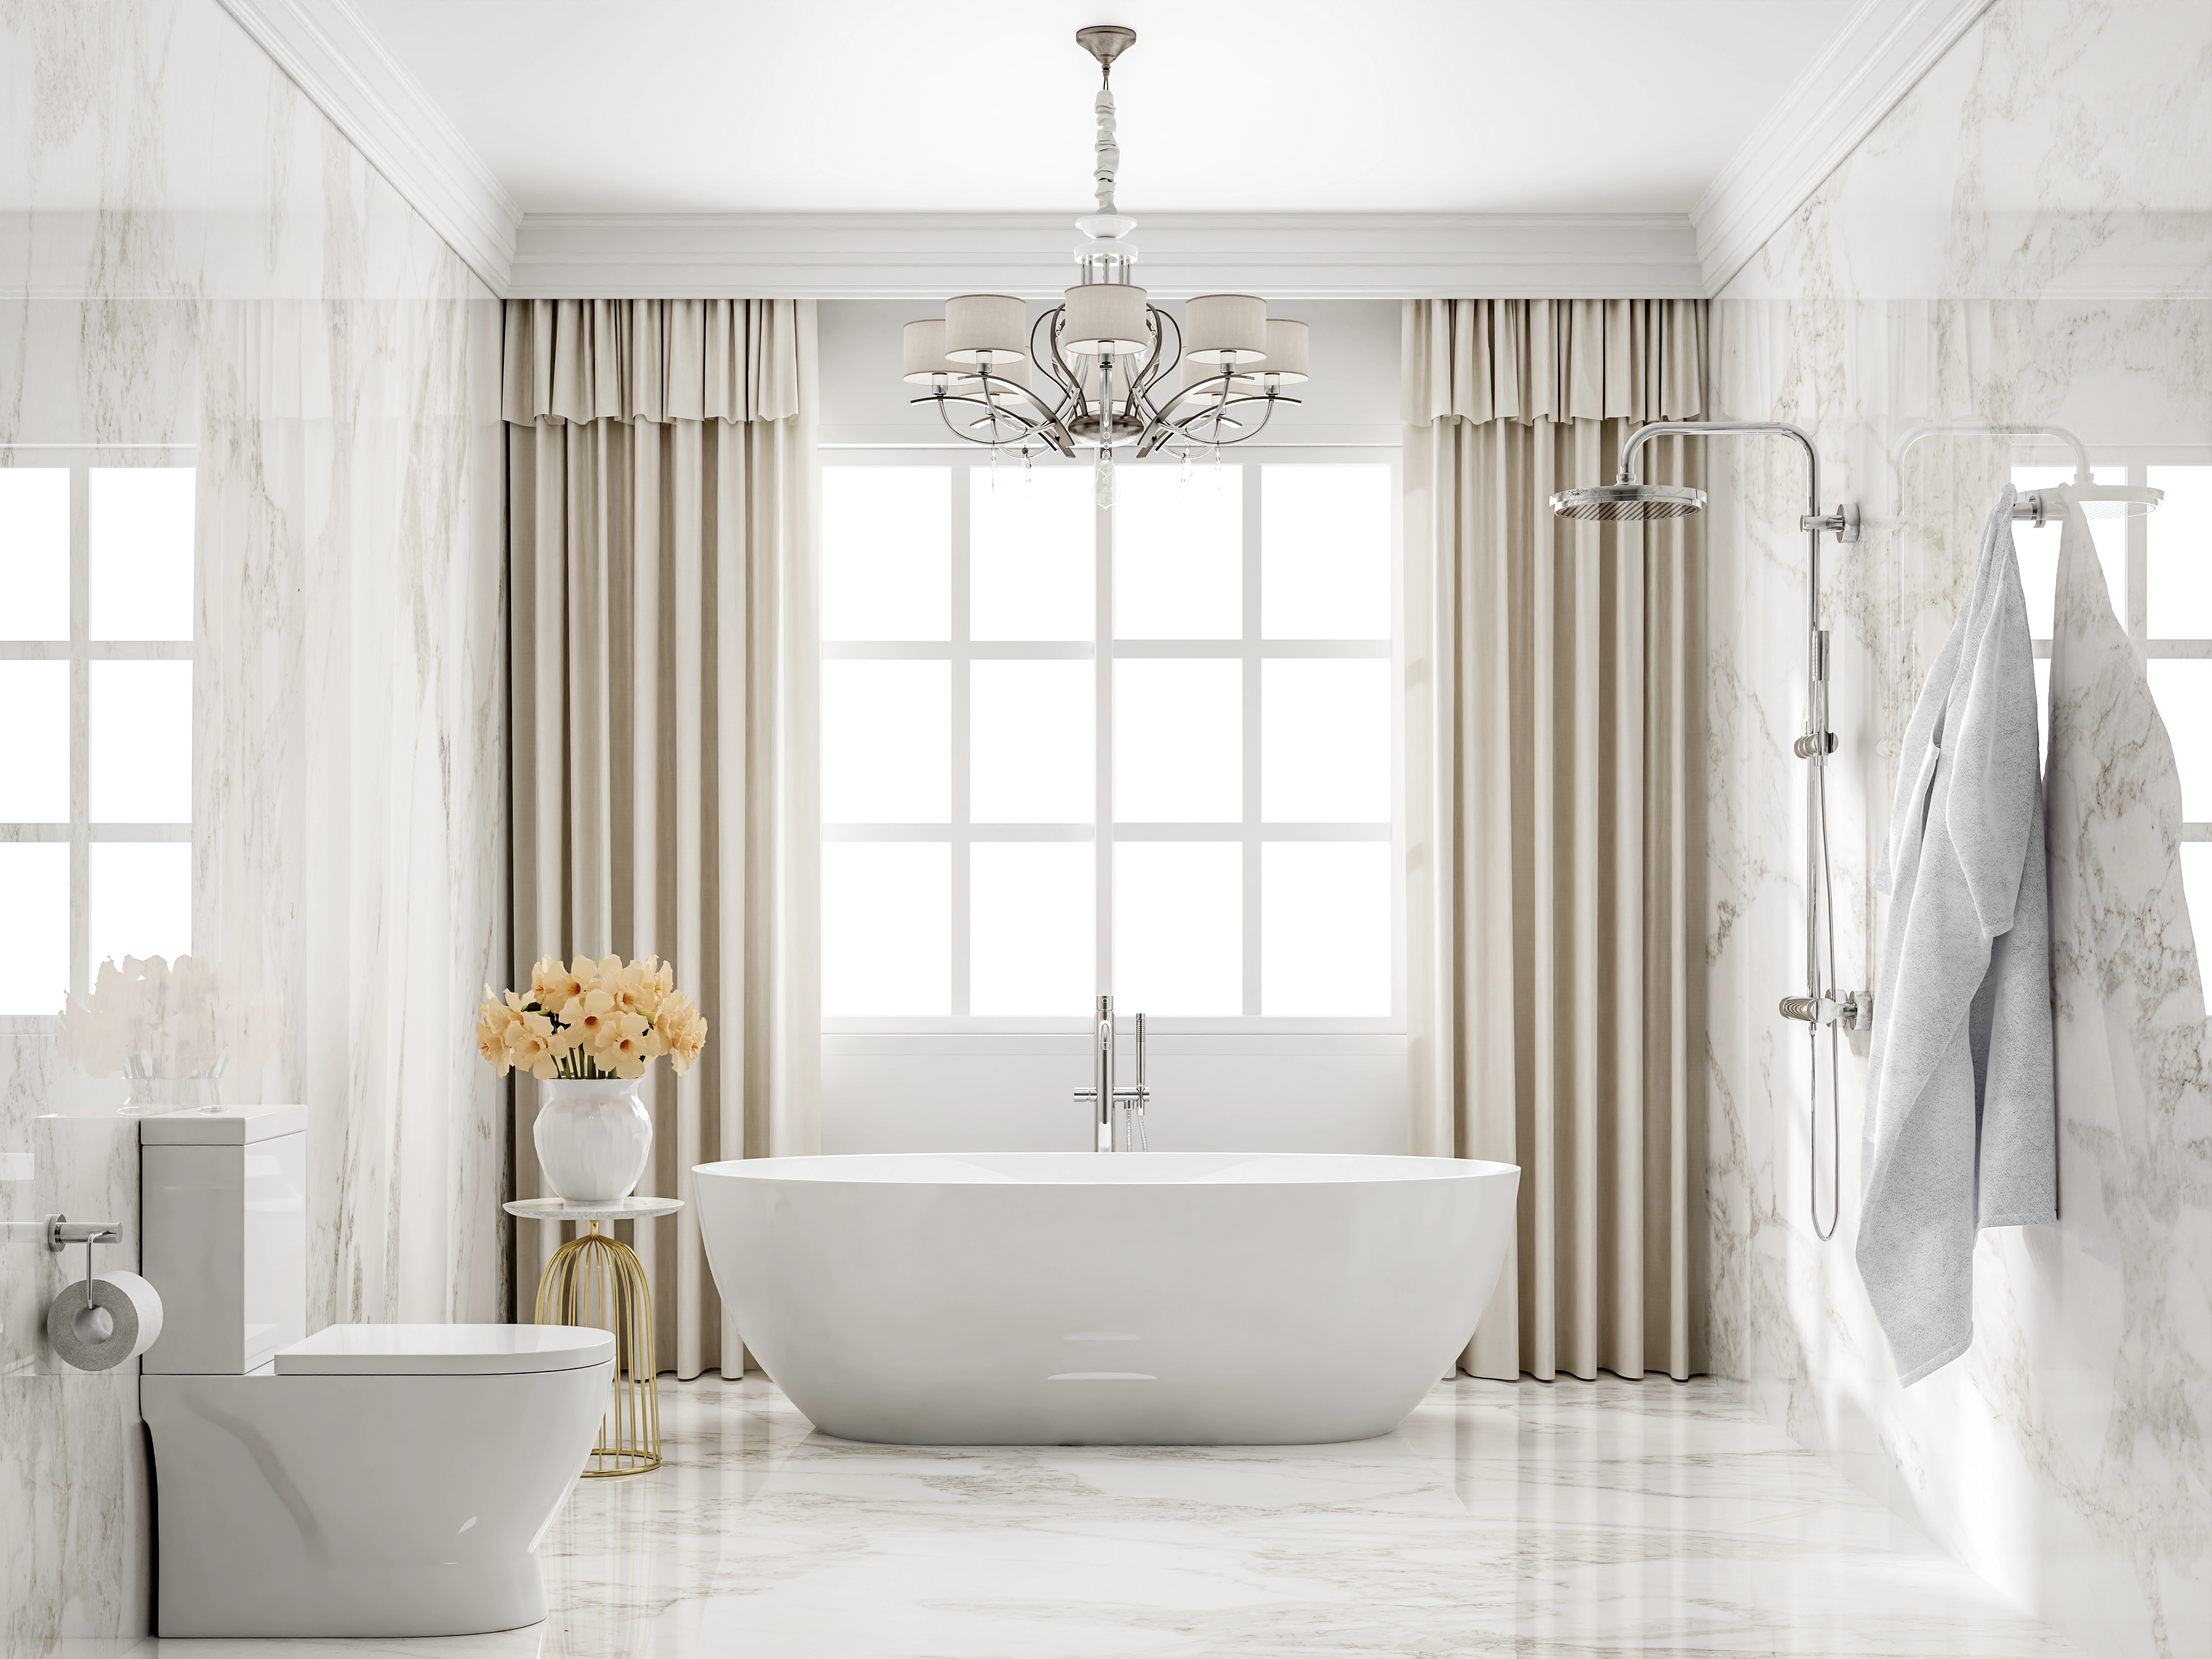 Inspiracja prezentująca łazienkę w kolorze białym z jasnym pokojem kąpielowym w marmurze, styl nowojorski. Element charakterystyczny: jasny pokój kąpielowy w marmurze